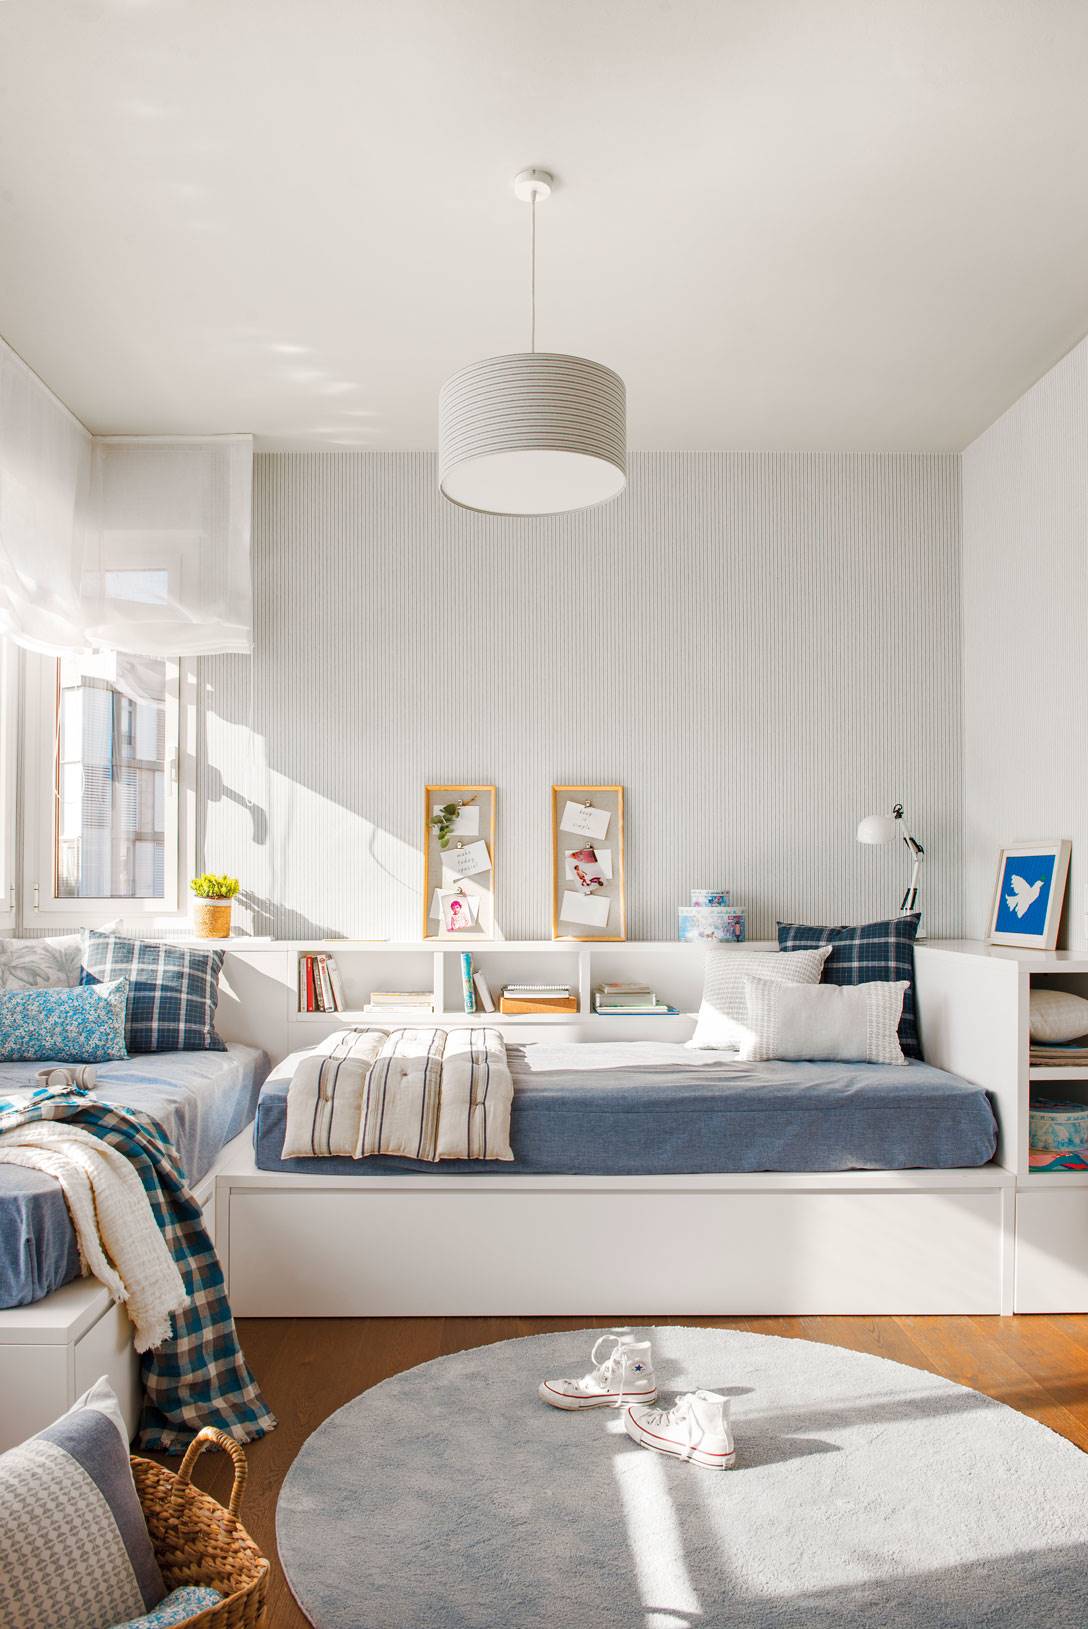 Dormitorio juvenil en blanco y azul con mueble a medida con espacio de almacenaje-522516